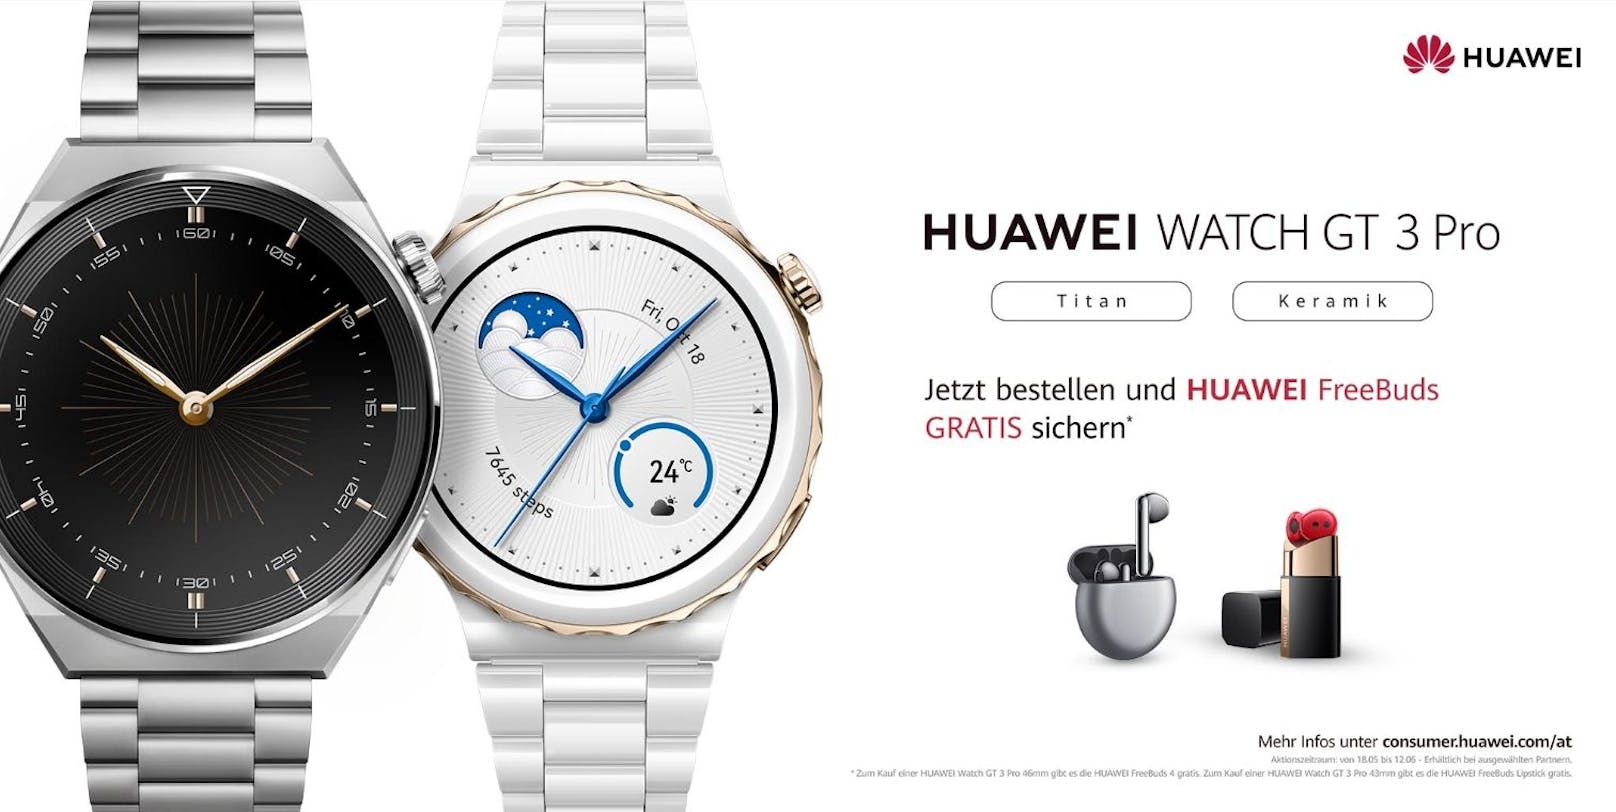 Im Aktionszeitraum bis zum 12. Juni: Bei der Bestellung einer neuen HUAWEI Watch GT 3 Pro Titan, bekommen die Käufer*innen HUAWEI FreeBuds gratis dazu.